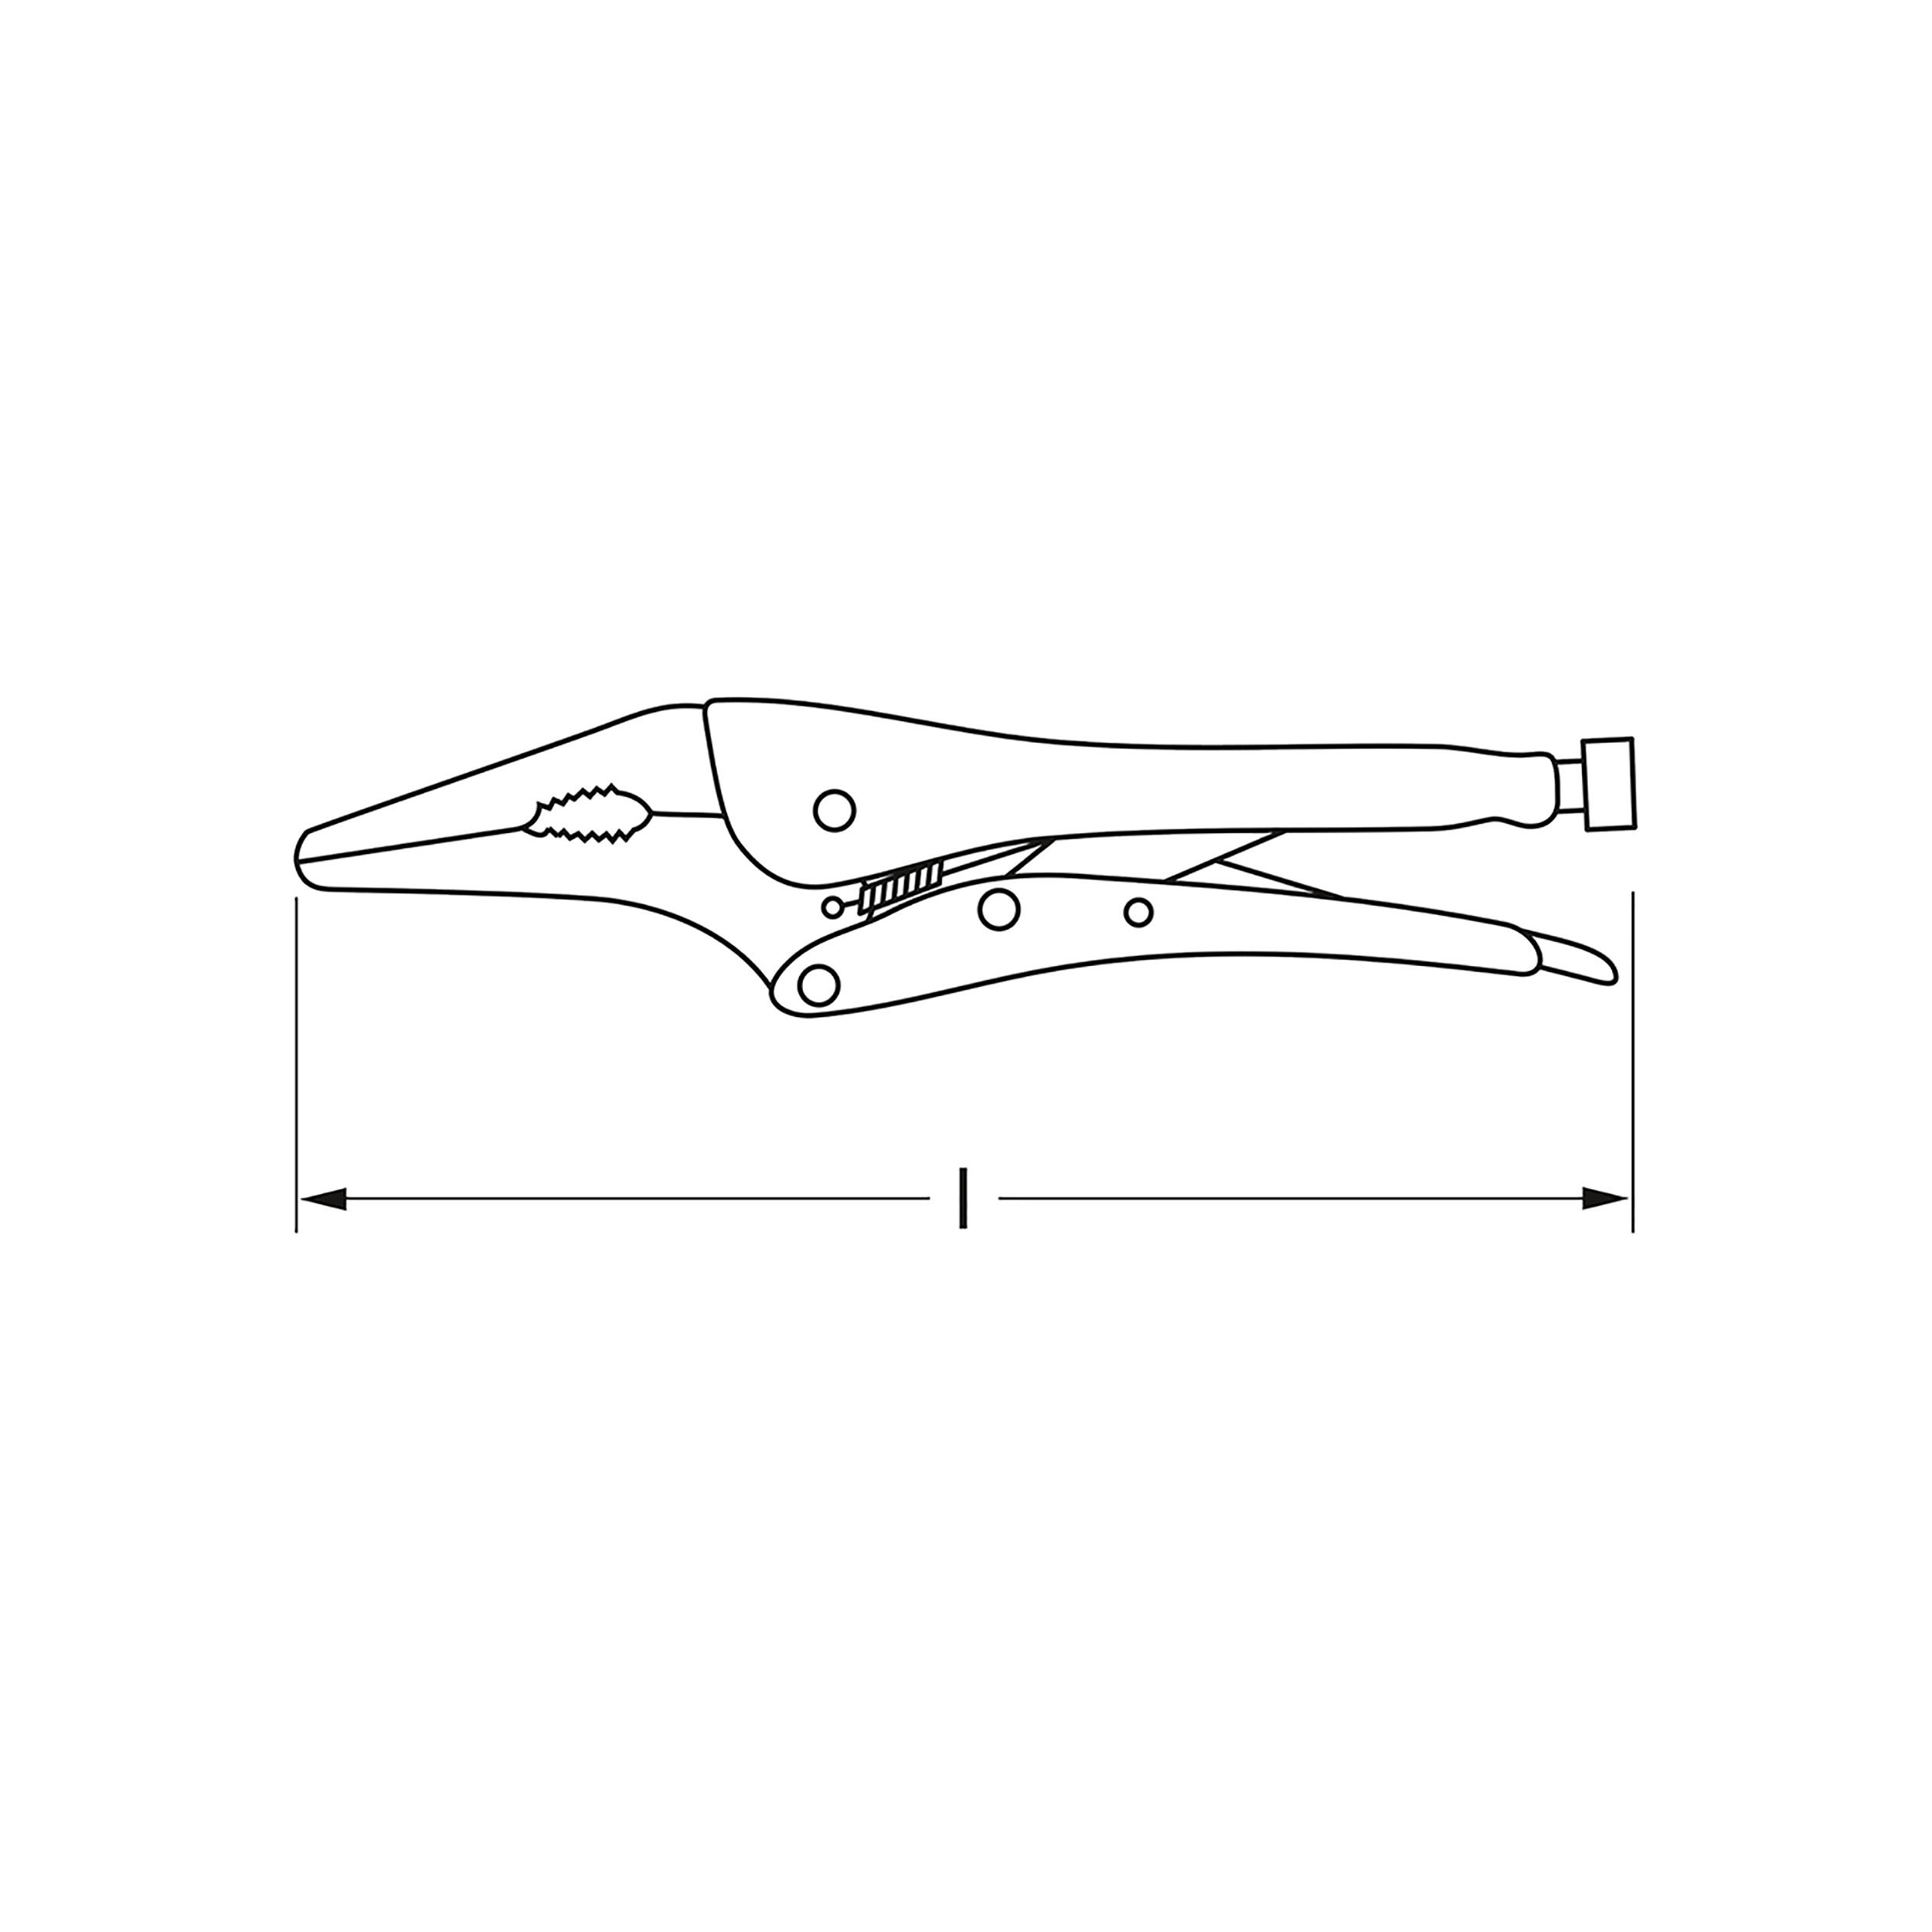 Langbeck-Gripzange, 165 mm (6.1/2"), MATADOR Art.-Nr.: 05890165